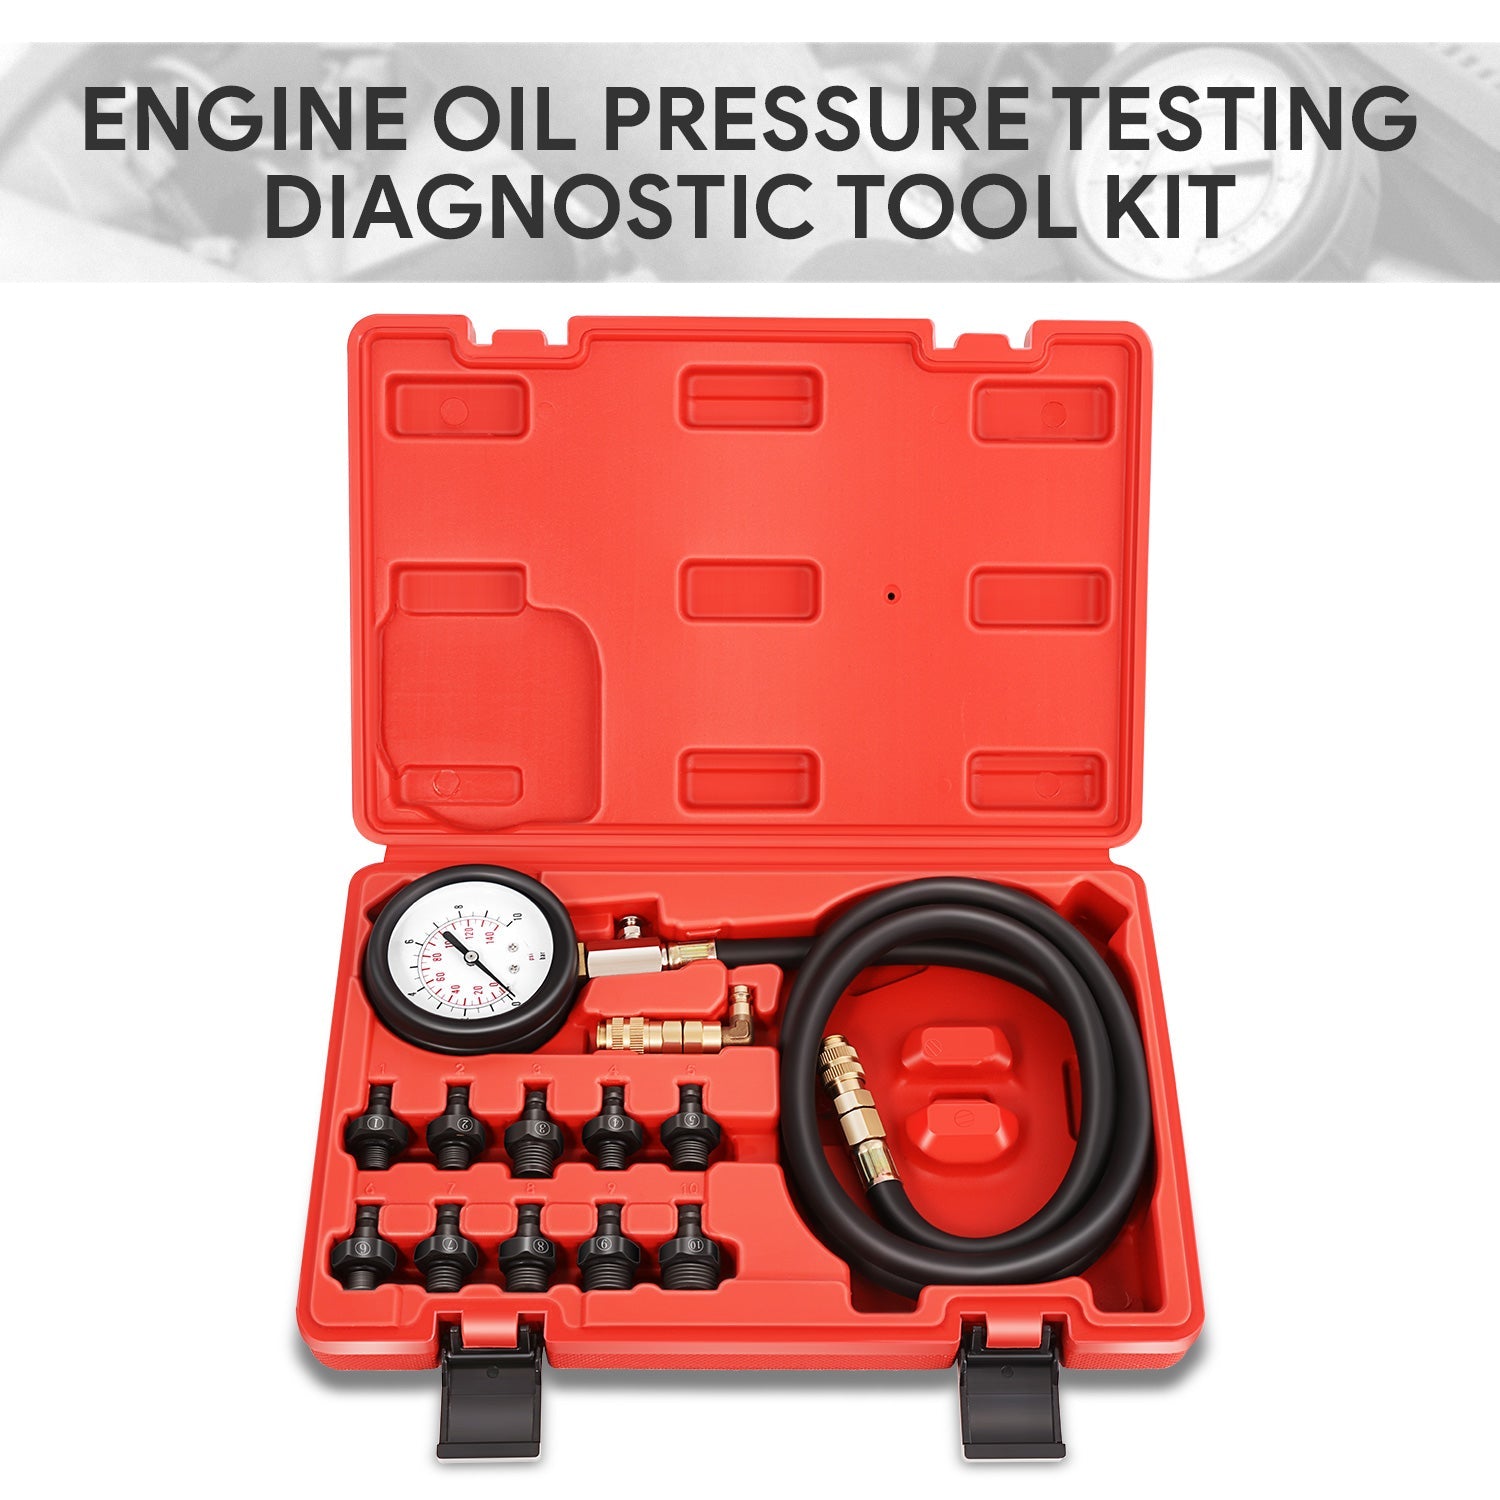 Engine Diagnostic Oil Pressure Test Kit <br>0-140PSI/0-10BAR gauge